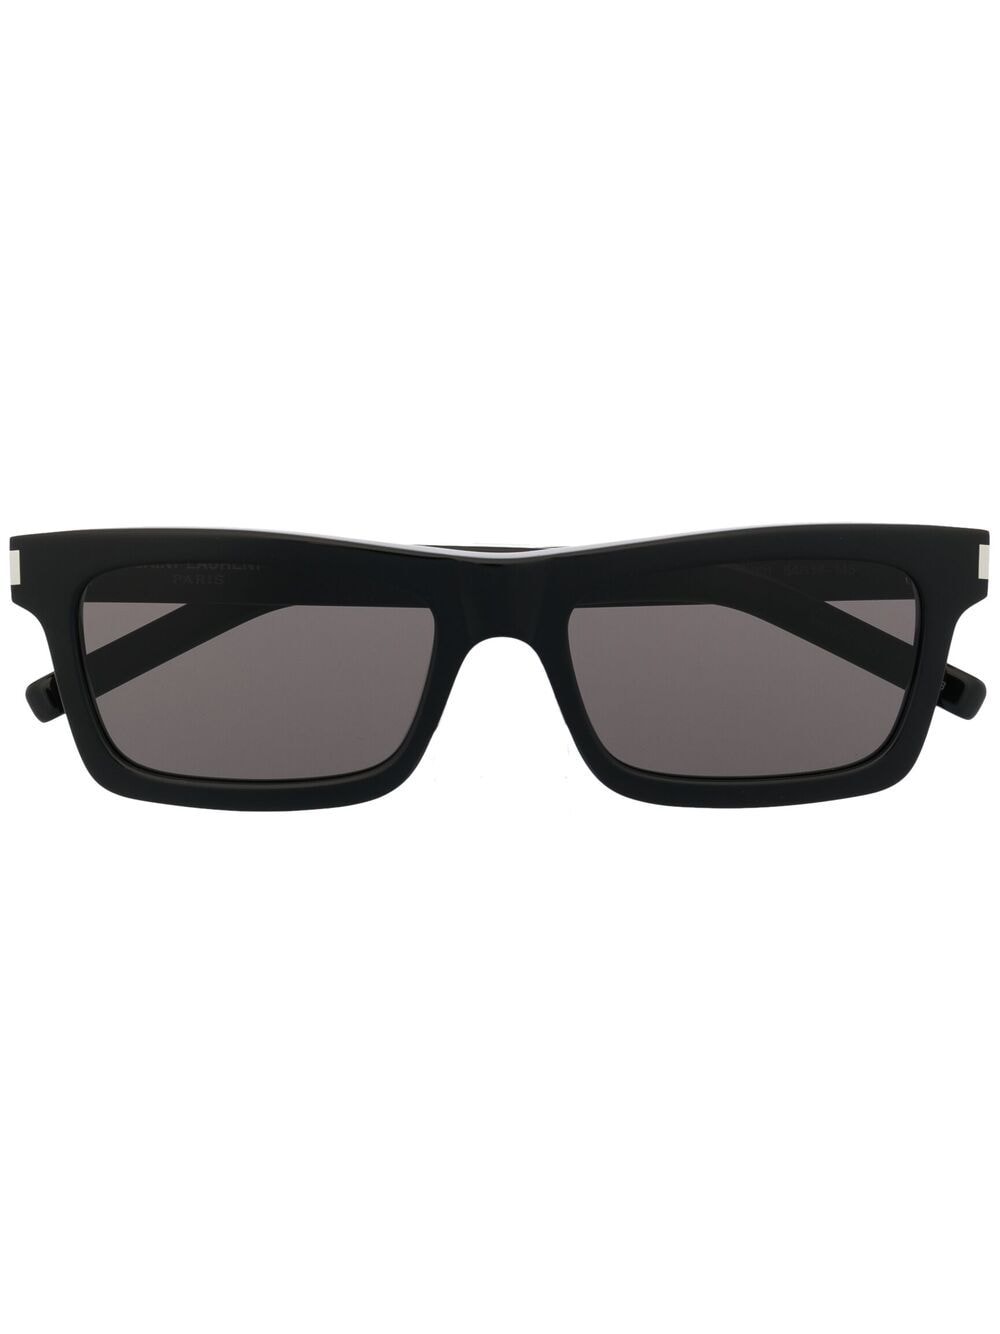 Saint Laurent Eyewear Sonnenbrille mit eckigem Gestell - Schwarz von Saint Laurent Eyewear